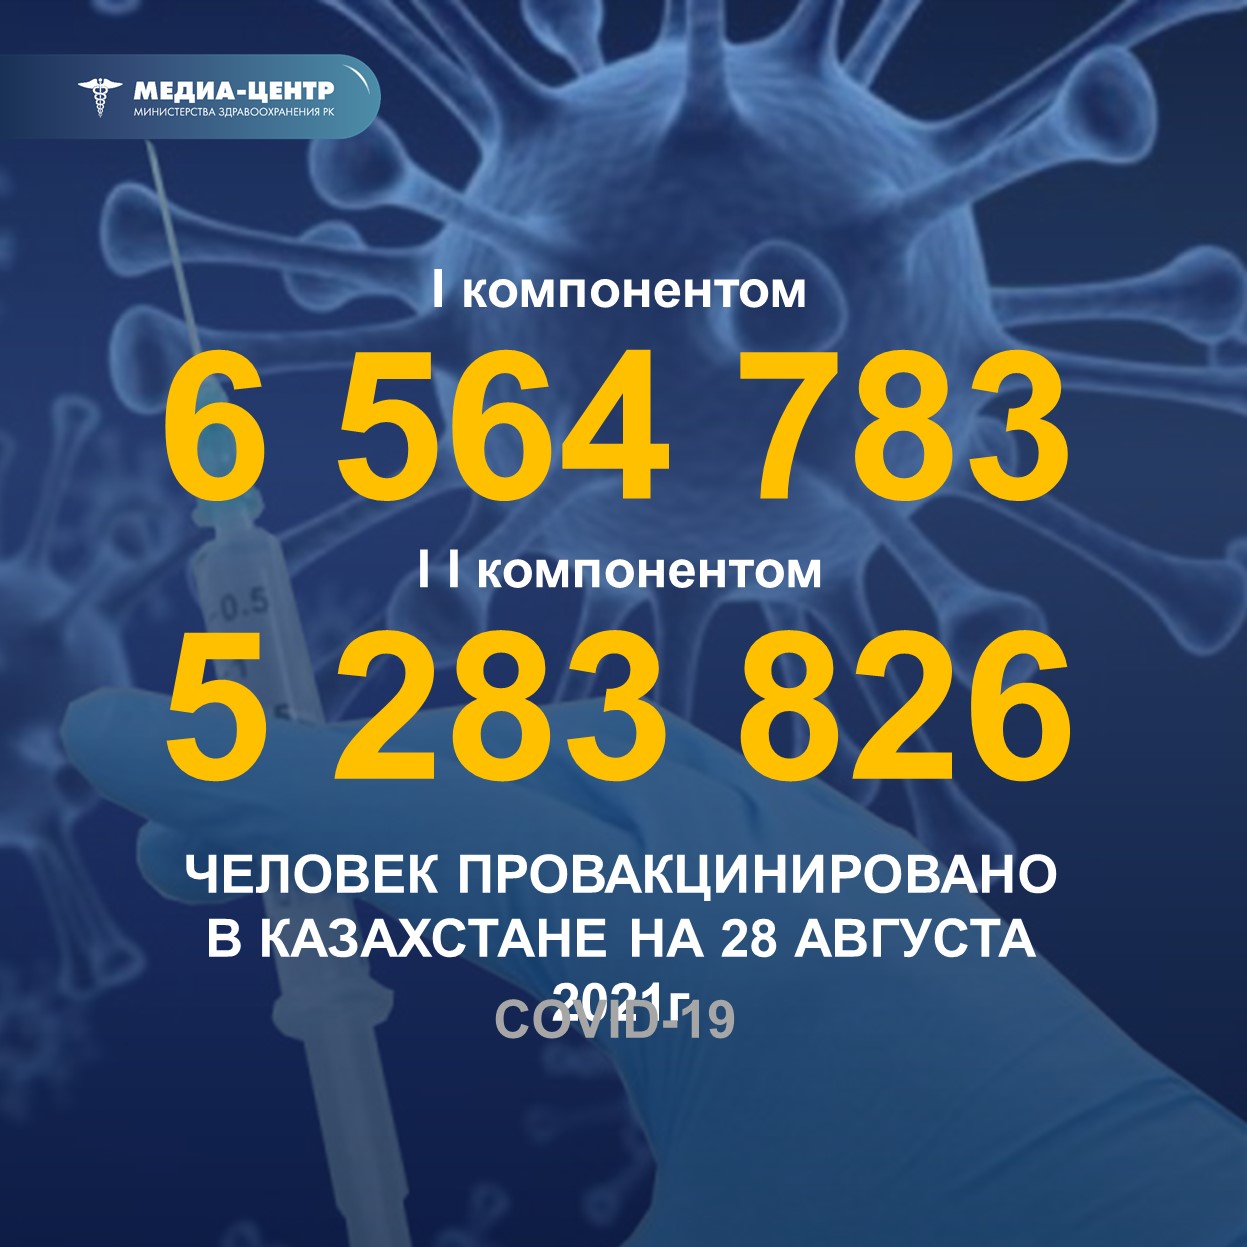 I компонентом 6 564 783 человек провакцинировано в Казахстане на 28 августа 2021г., II компонентом 5 283 826 человек.